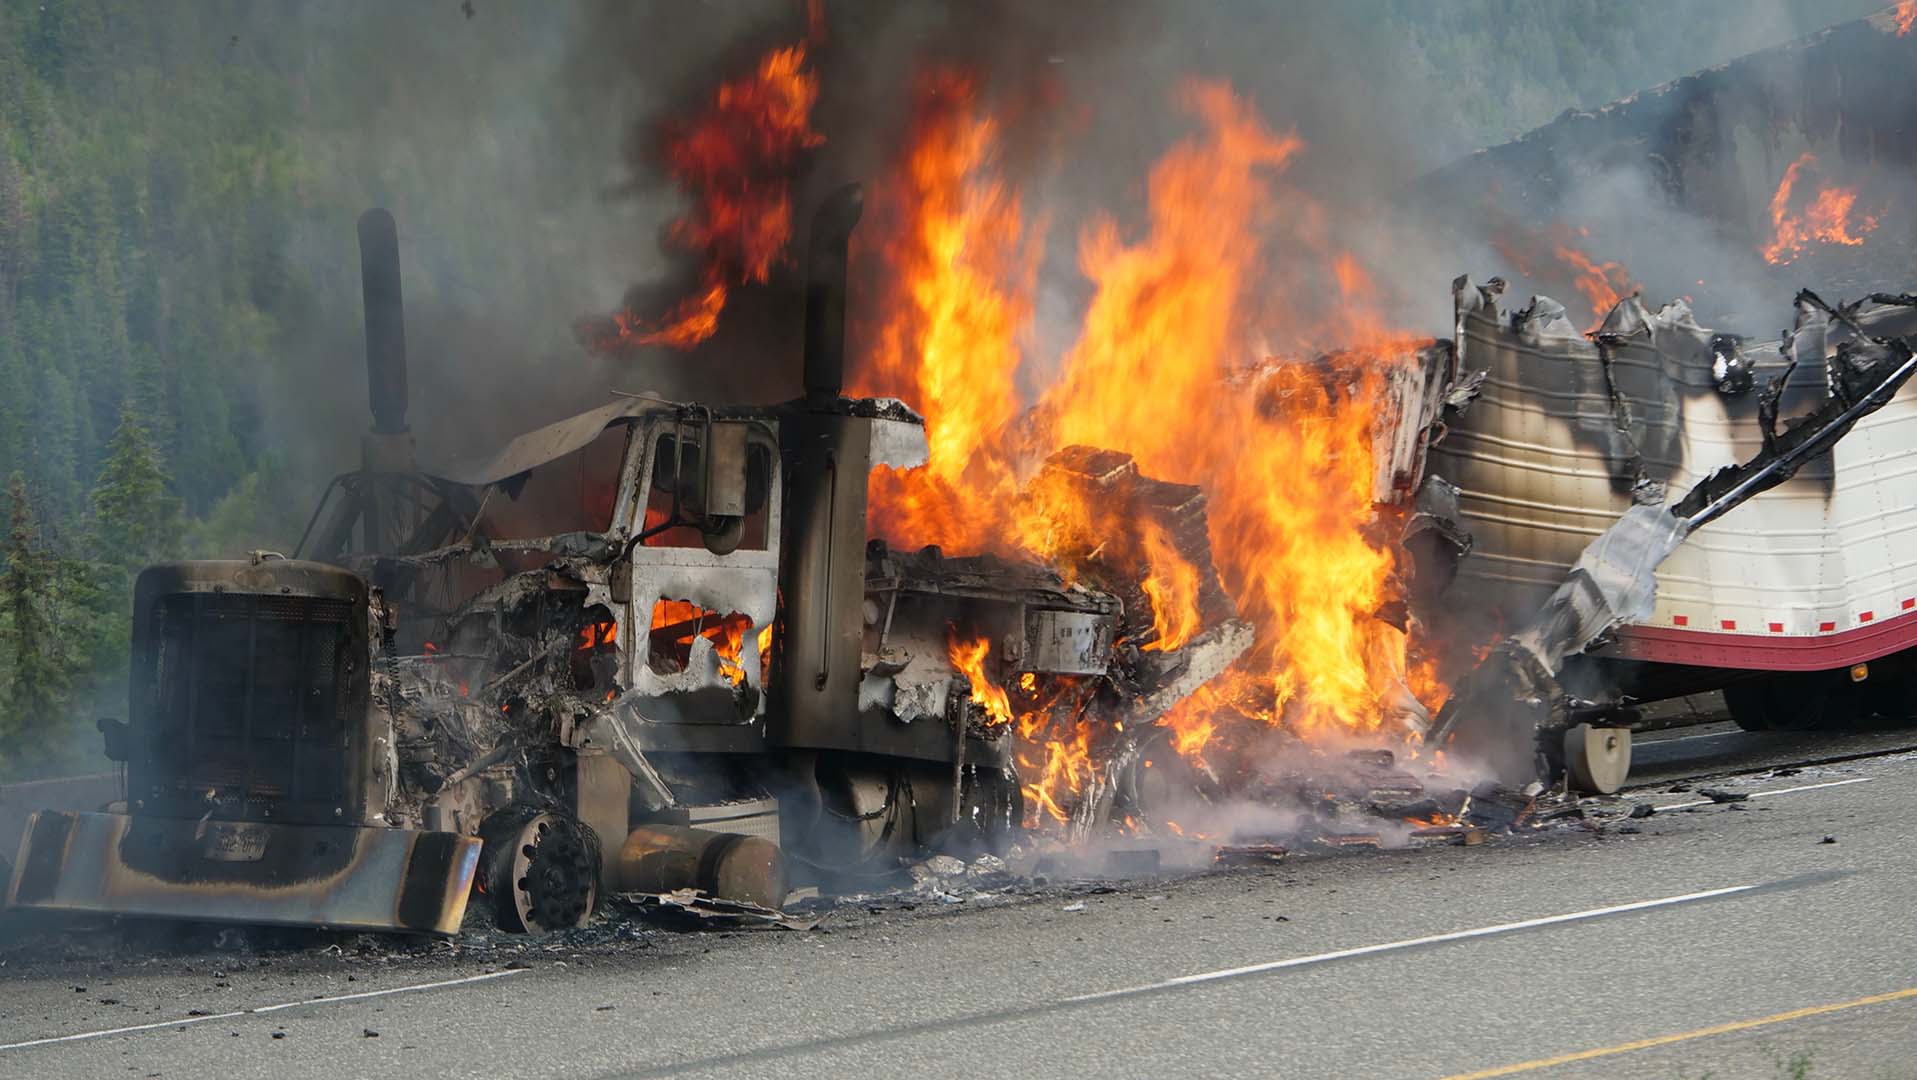 Rogel Aguilera -Mederos: ¿Por qué los camioneros se rebelan por sentencia para conductor de choque mortal?3 min read